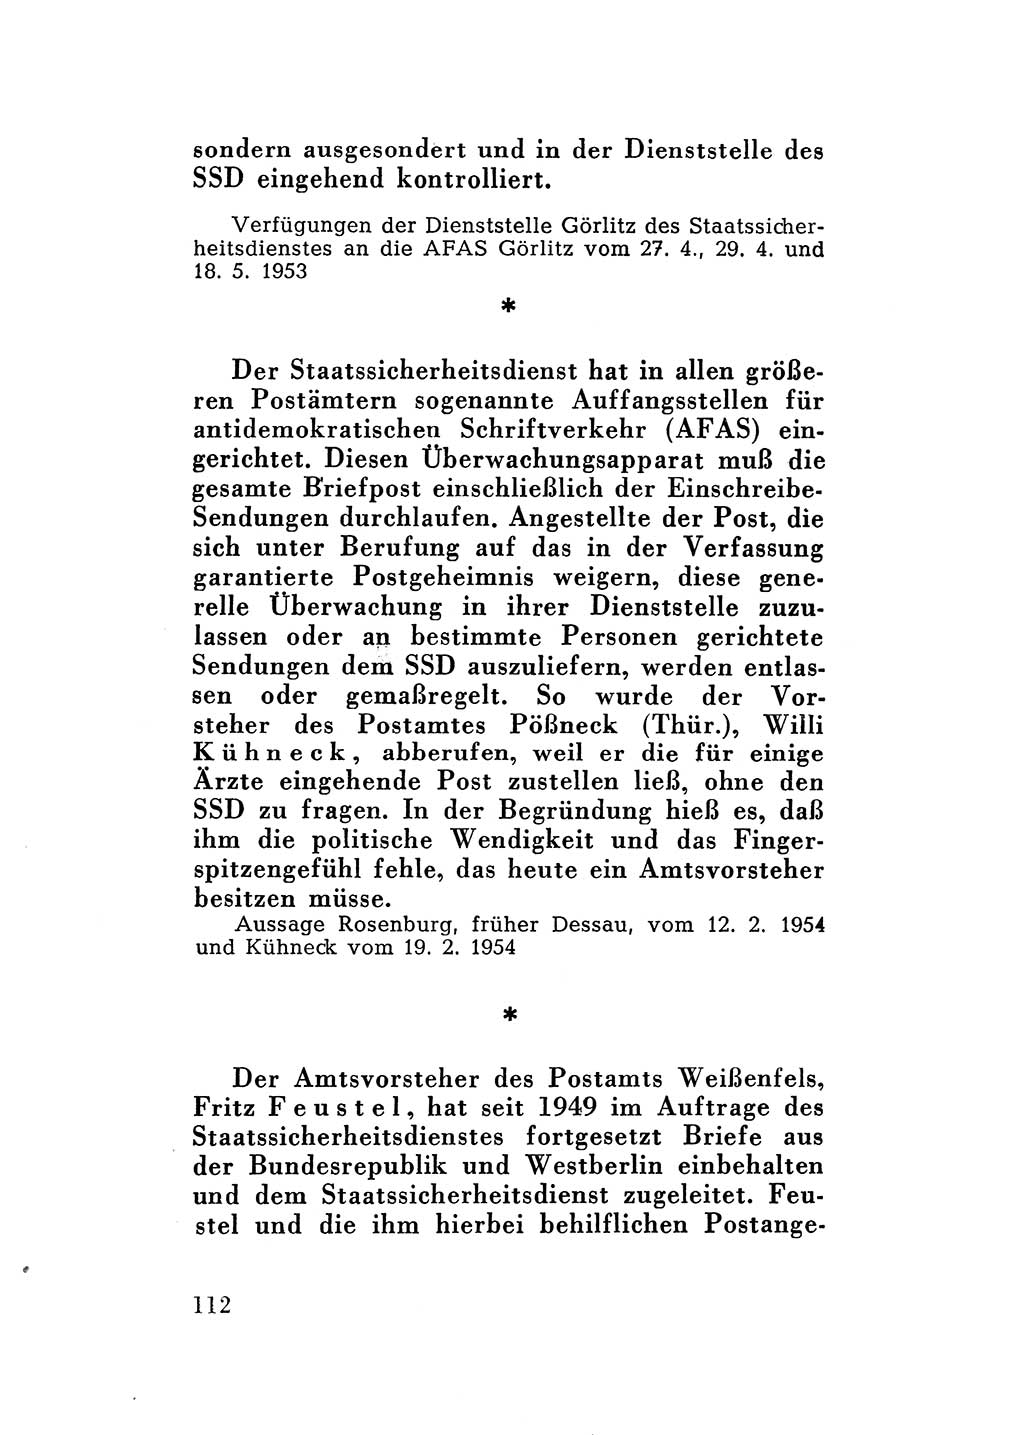 Katalog des Unrechts, Untersuchungsausschuß Freiheitlicher Juristen (UfJ) [Bundesrepublik Deutschland (BRD)] 1956, Seite 112 (Kat. UnR. UfJ BRD 1956, S. 112)